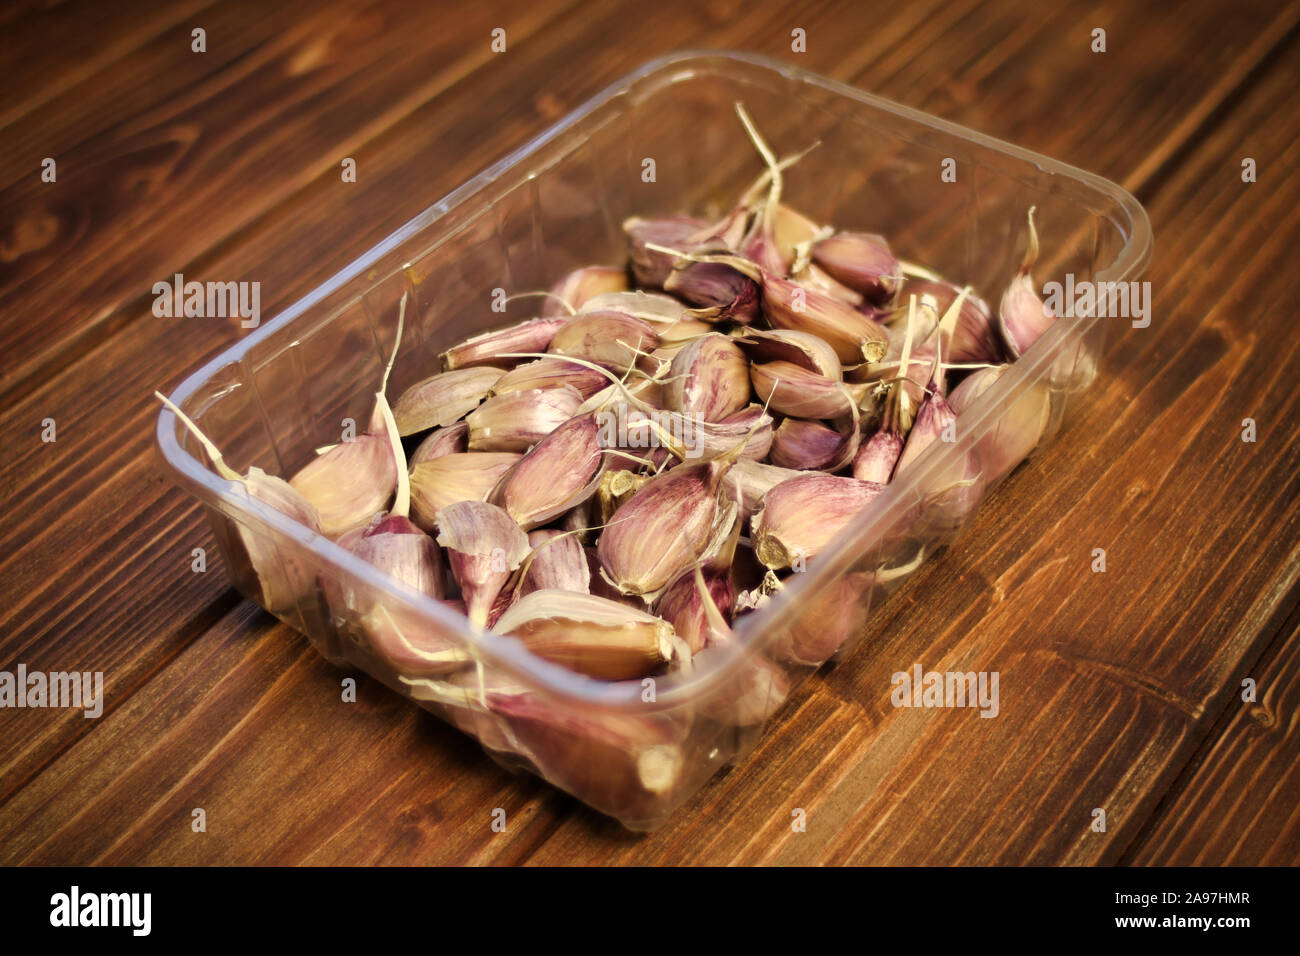 Primo piano della rosa / viola / viola varietà di spicchi di aglio ( Allium sativum), Piantine preparate per la semina autunnale, aglio in un vassoio di plastica su legno Foto Stock